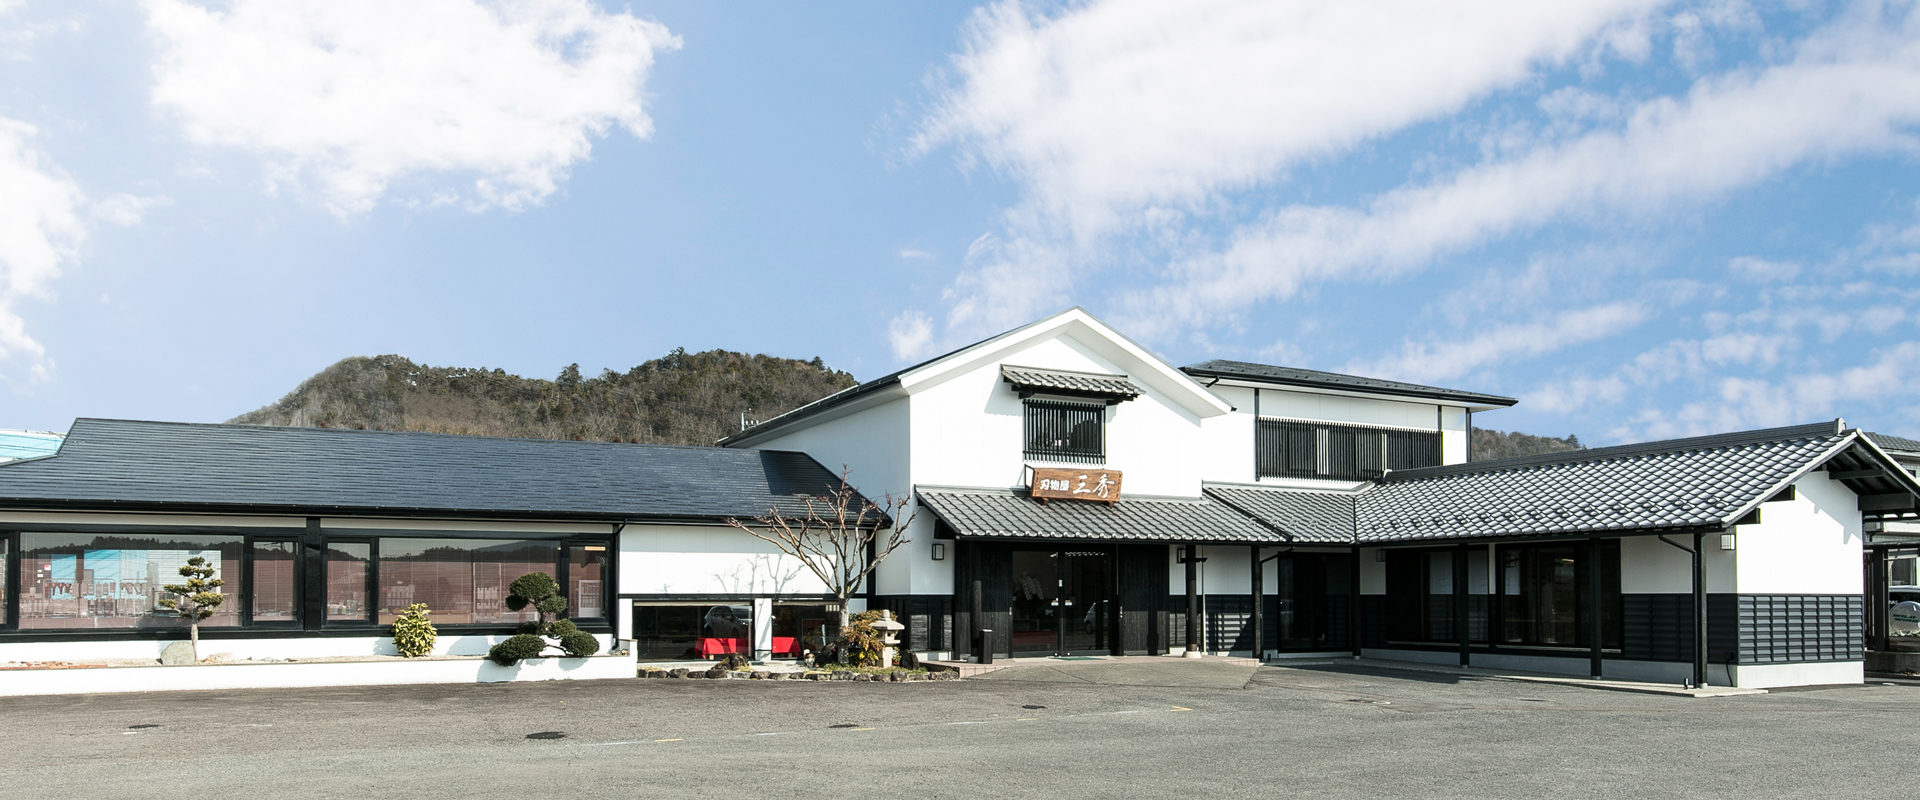 岐阜で人気の観光地、関刃物ミュージアムの写真